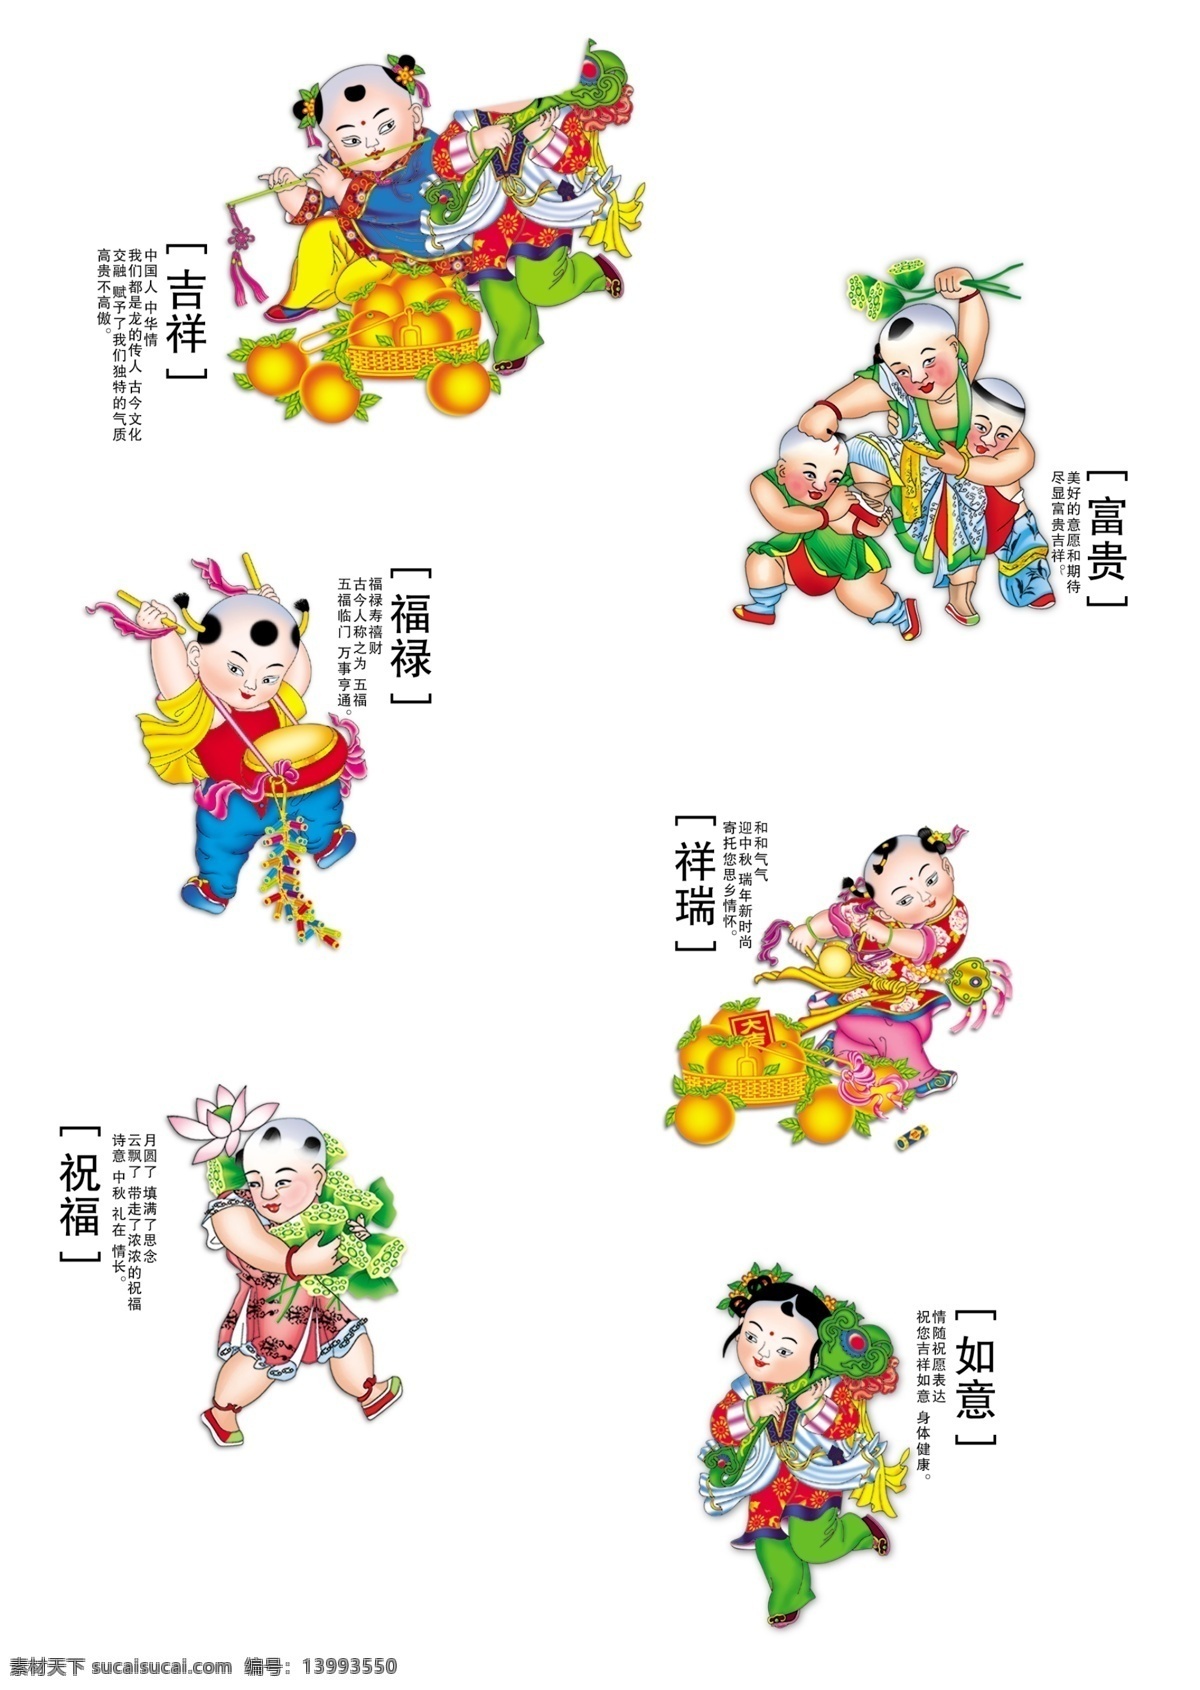 中国传统文化 中国娃娃 传统文化 吉祥如意 文化艺术